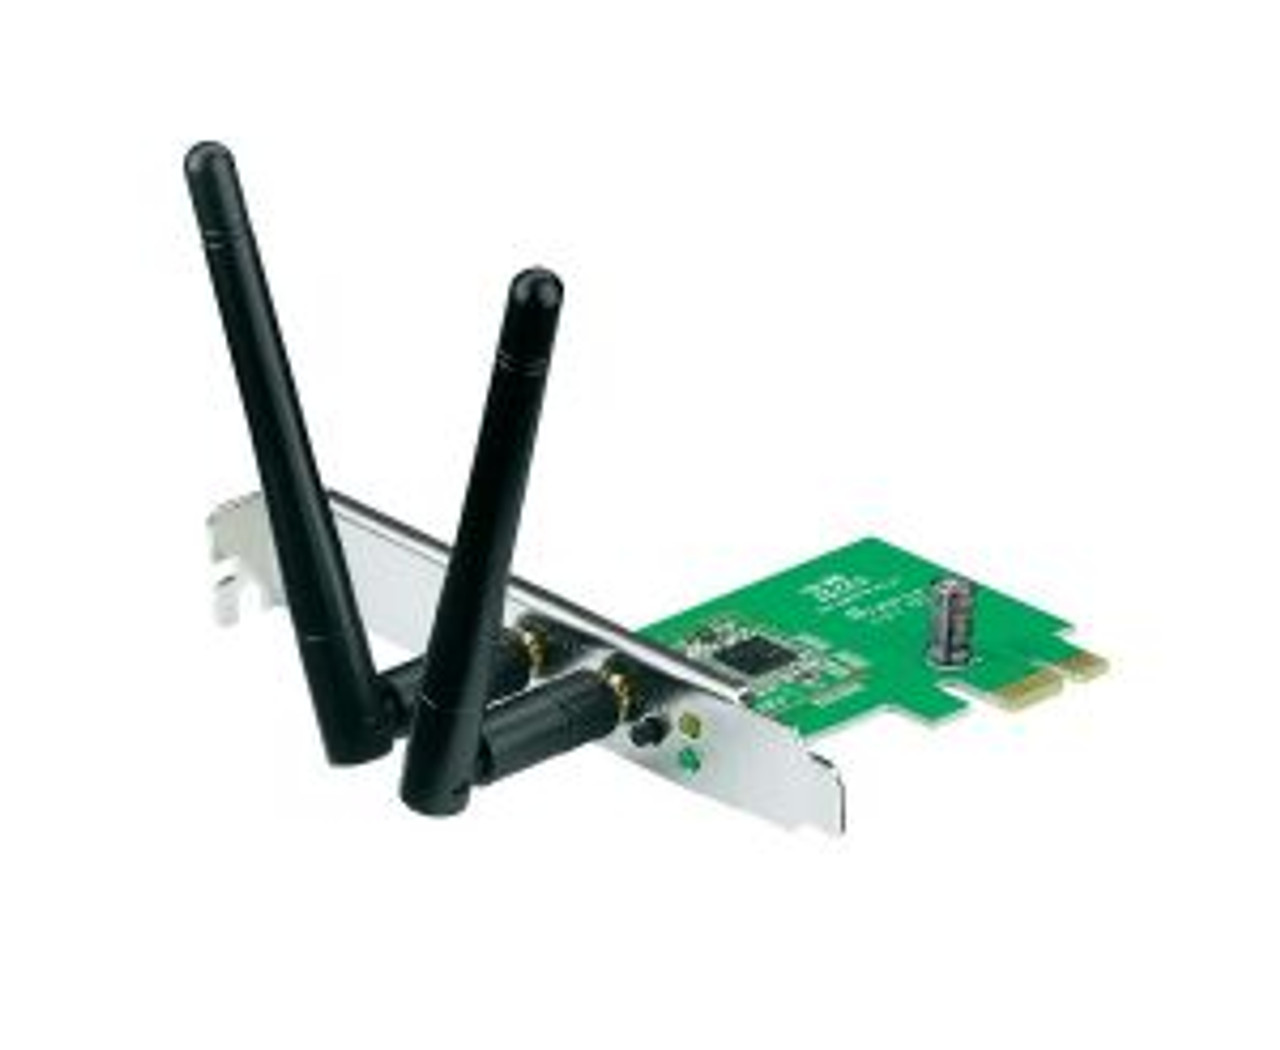 JR356 Dell 1395 802.11 b/g Wireless Mini-PCI Express WiFi Card